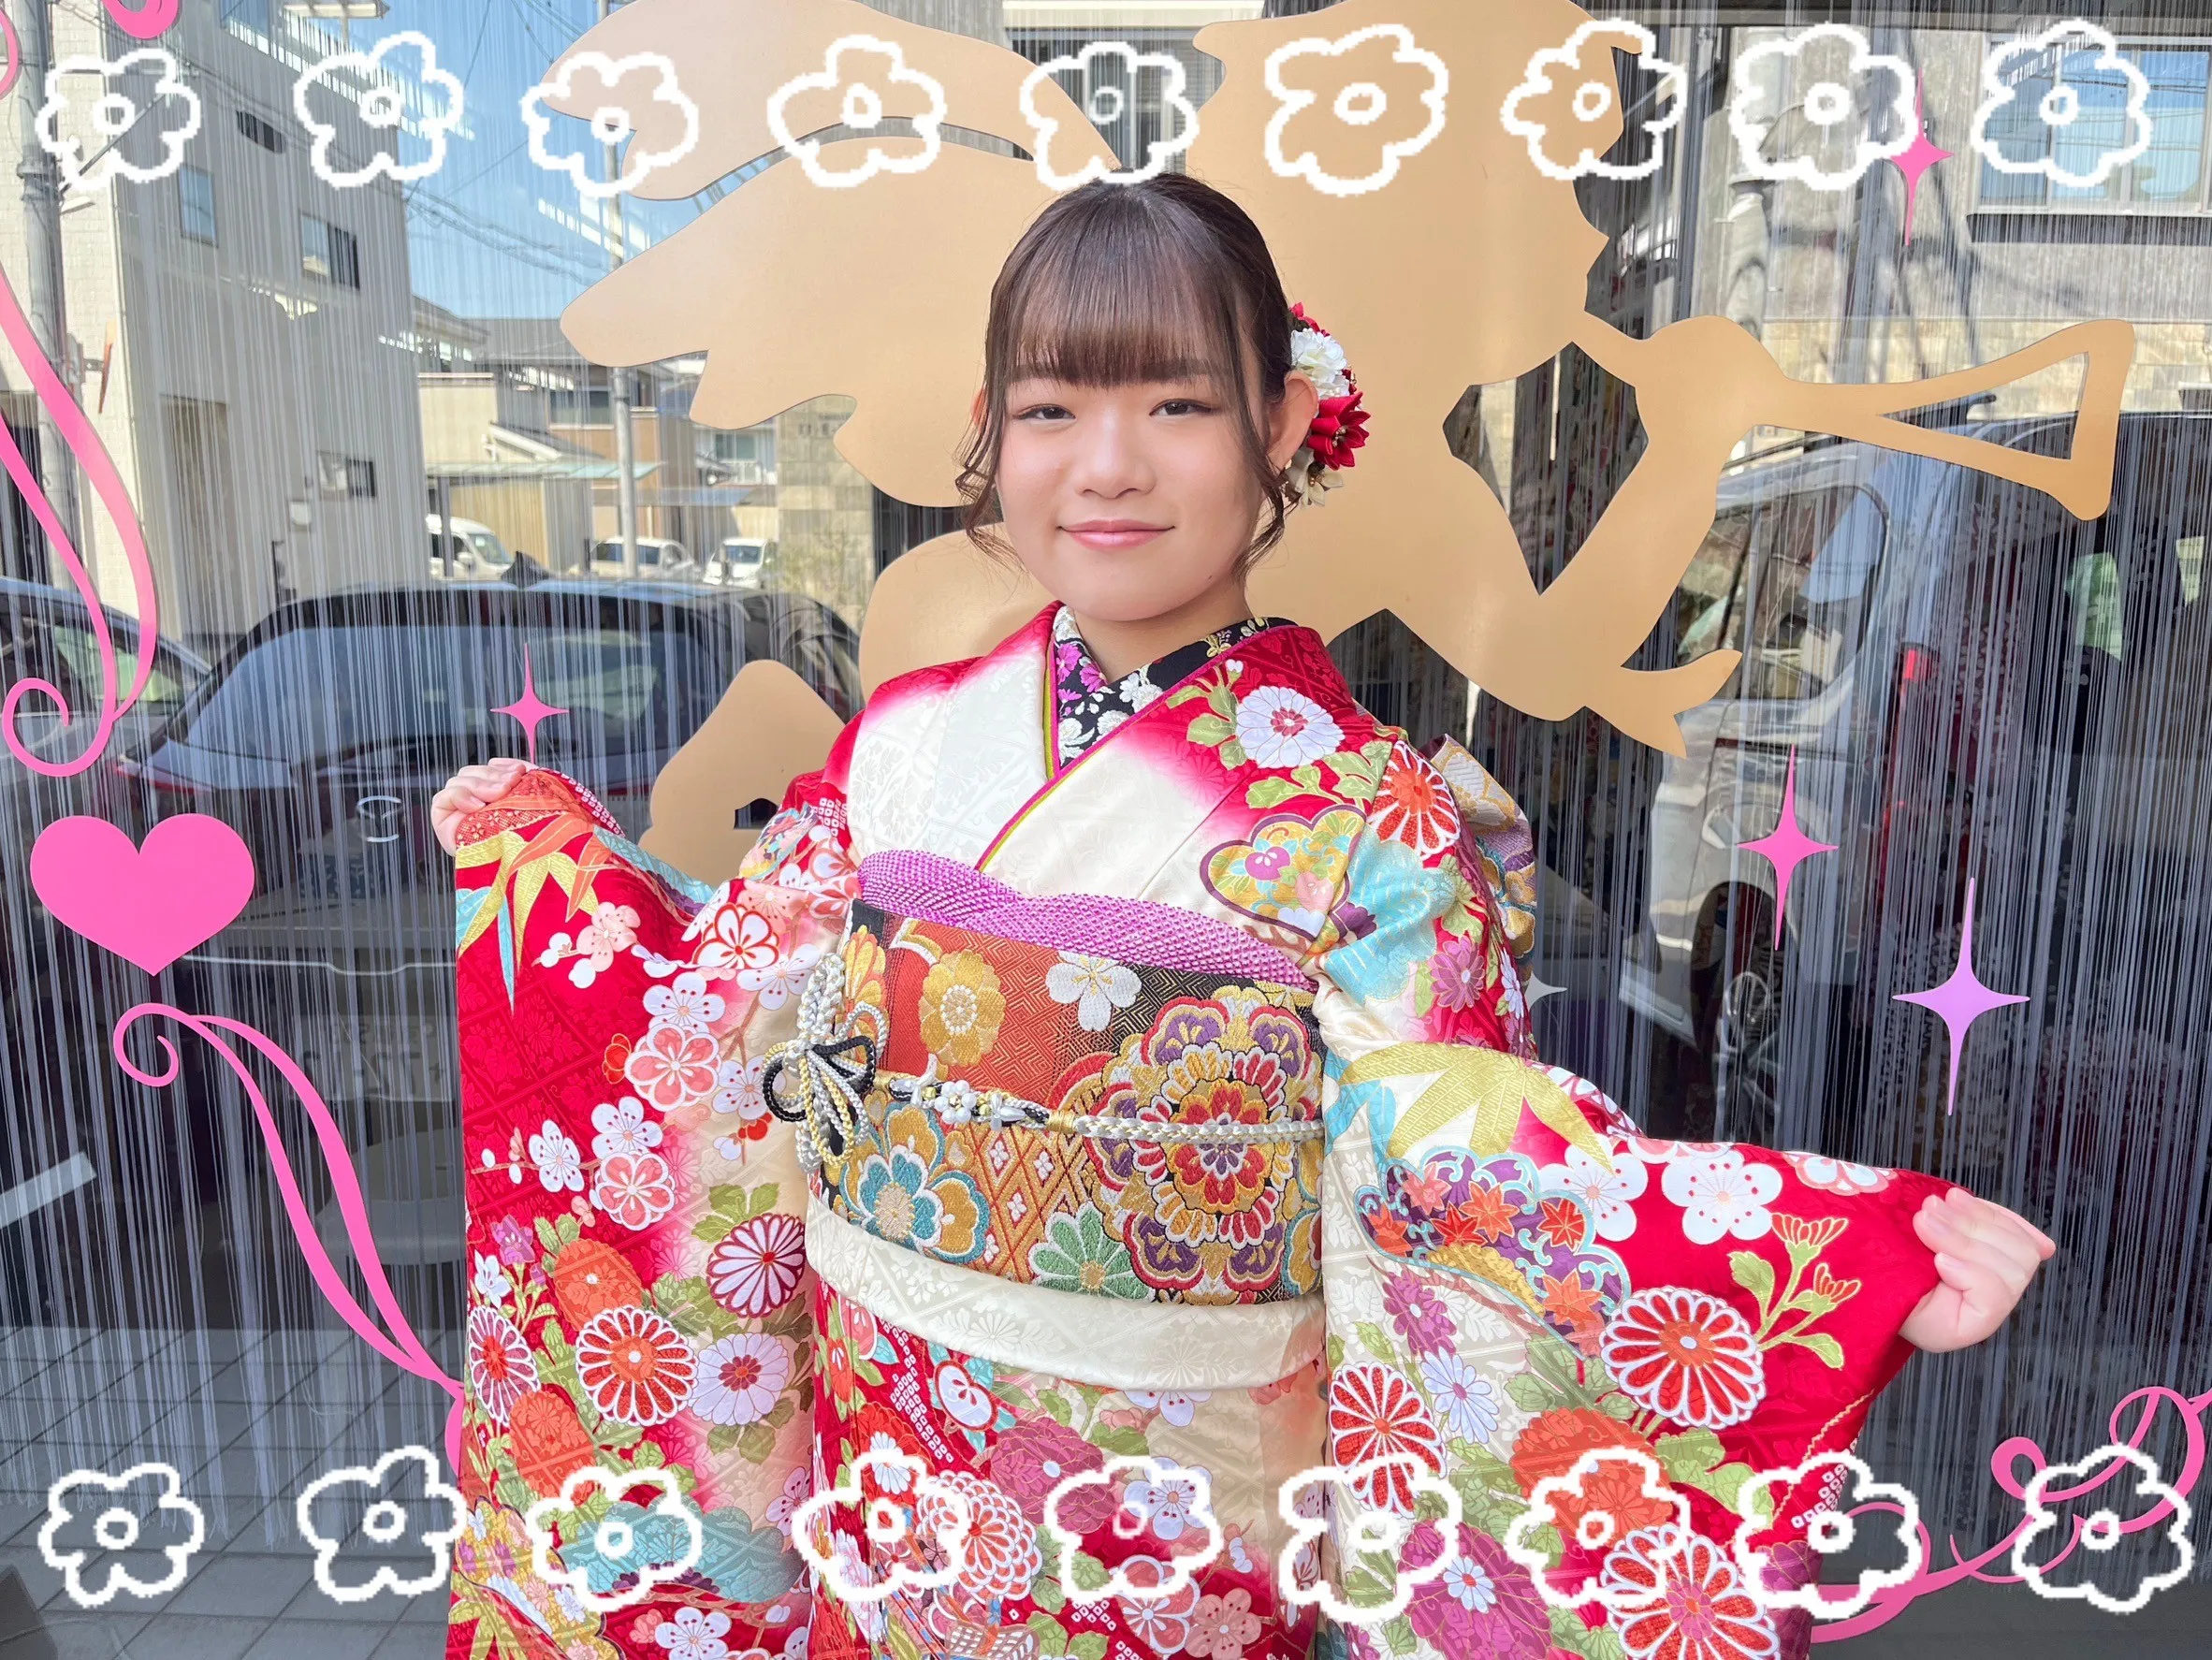 【TAKAZEN奈良店】14日♡思い出いっぱいの大盛り上がりオシャレで可愛い成人式前撮り姫ちゃん達♡